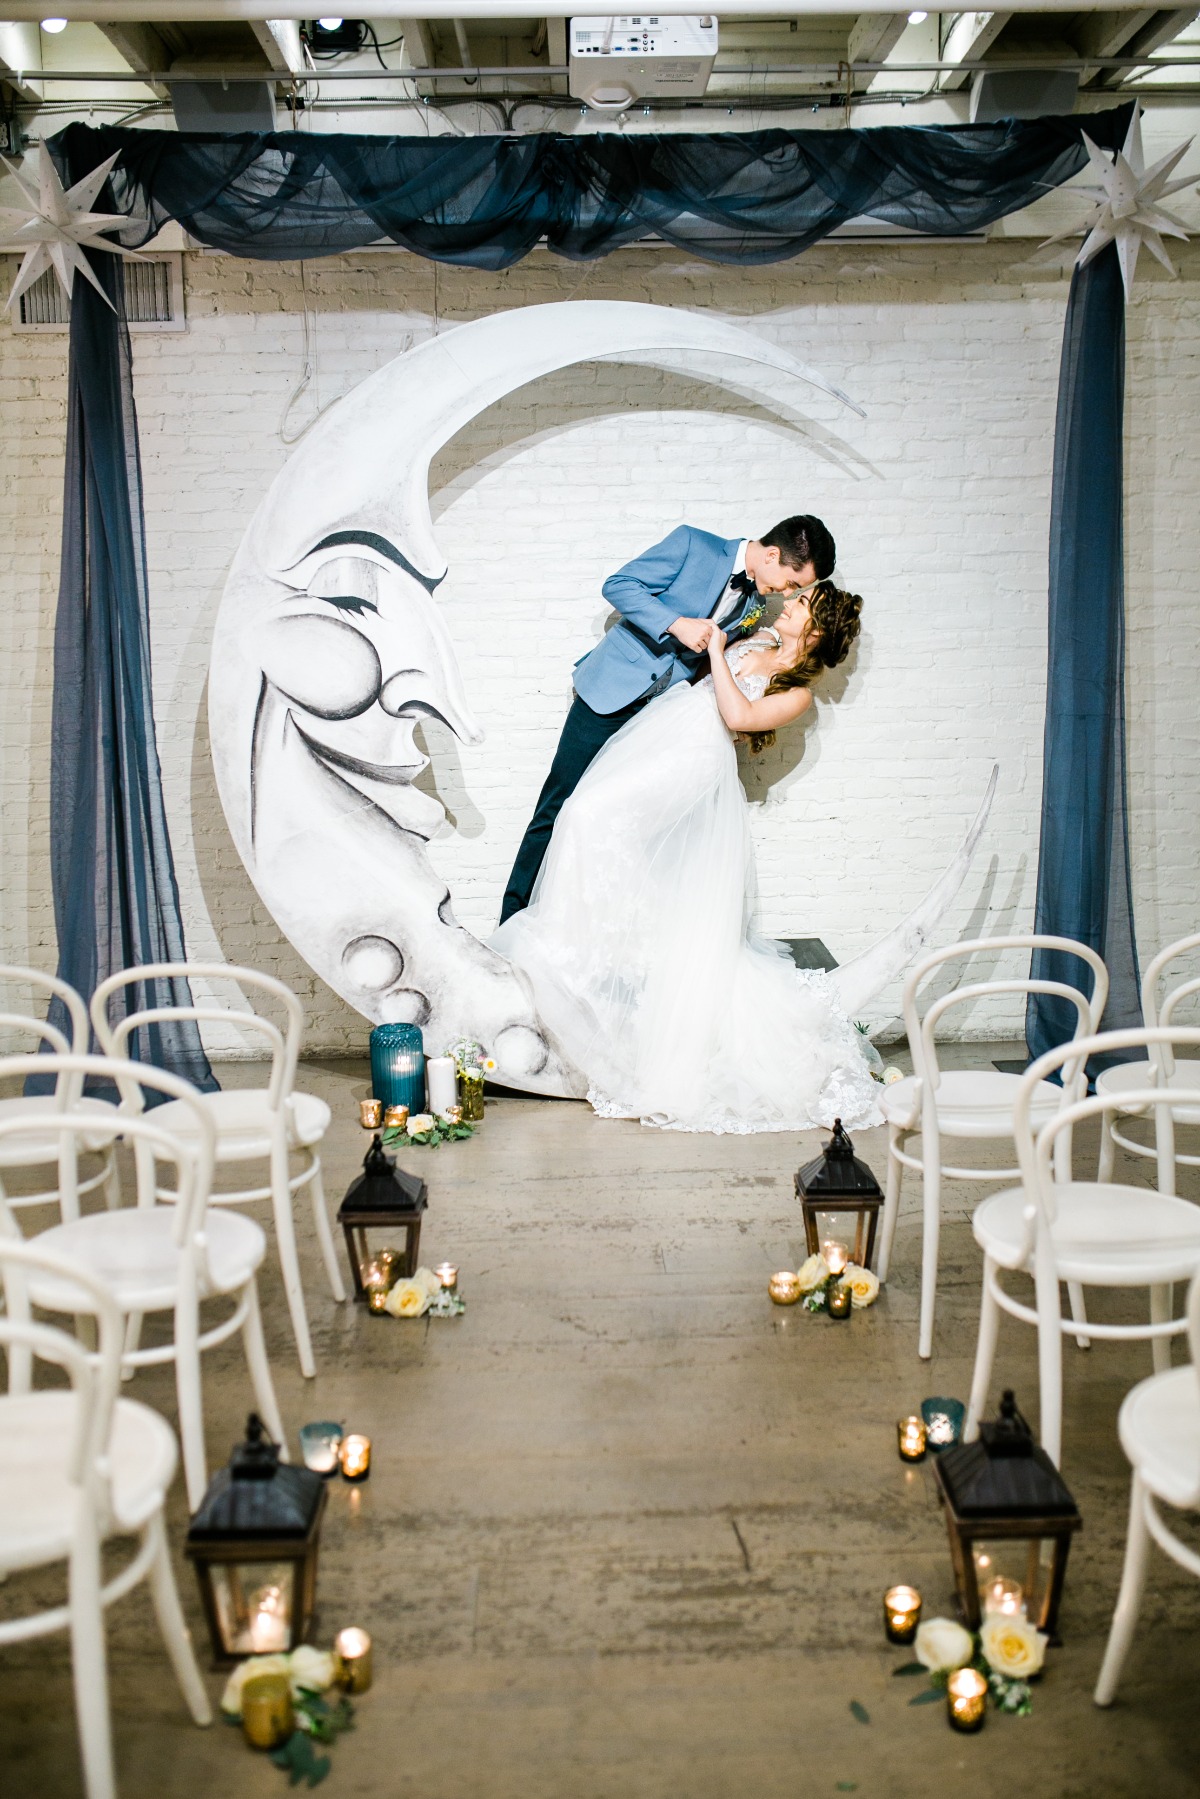 Cute Over the Moon wedding ideas